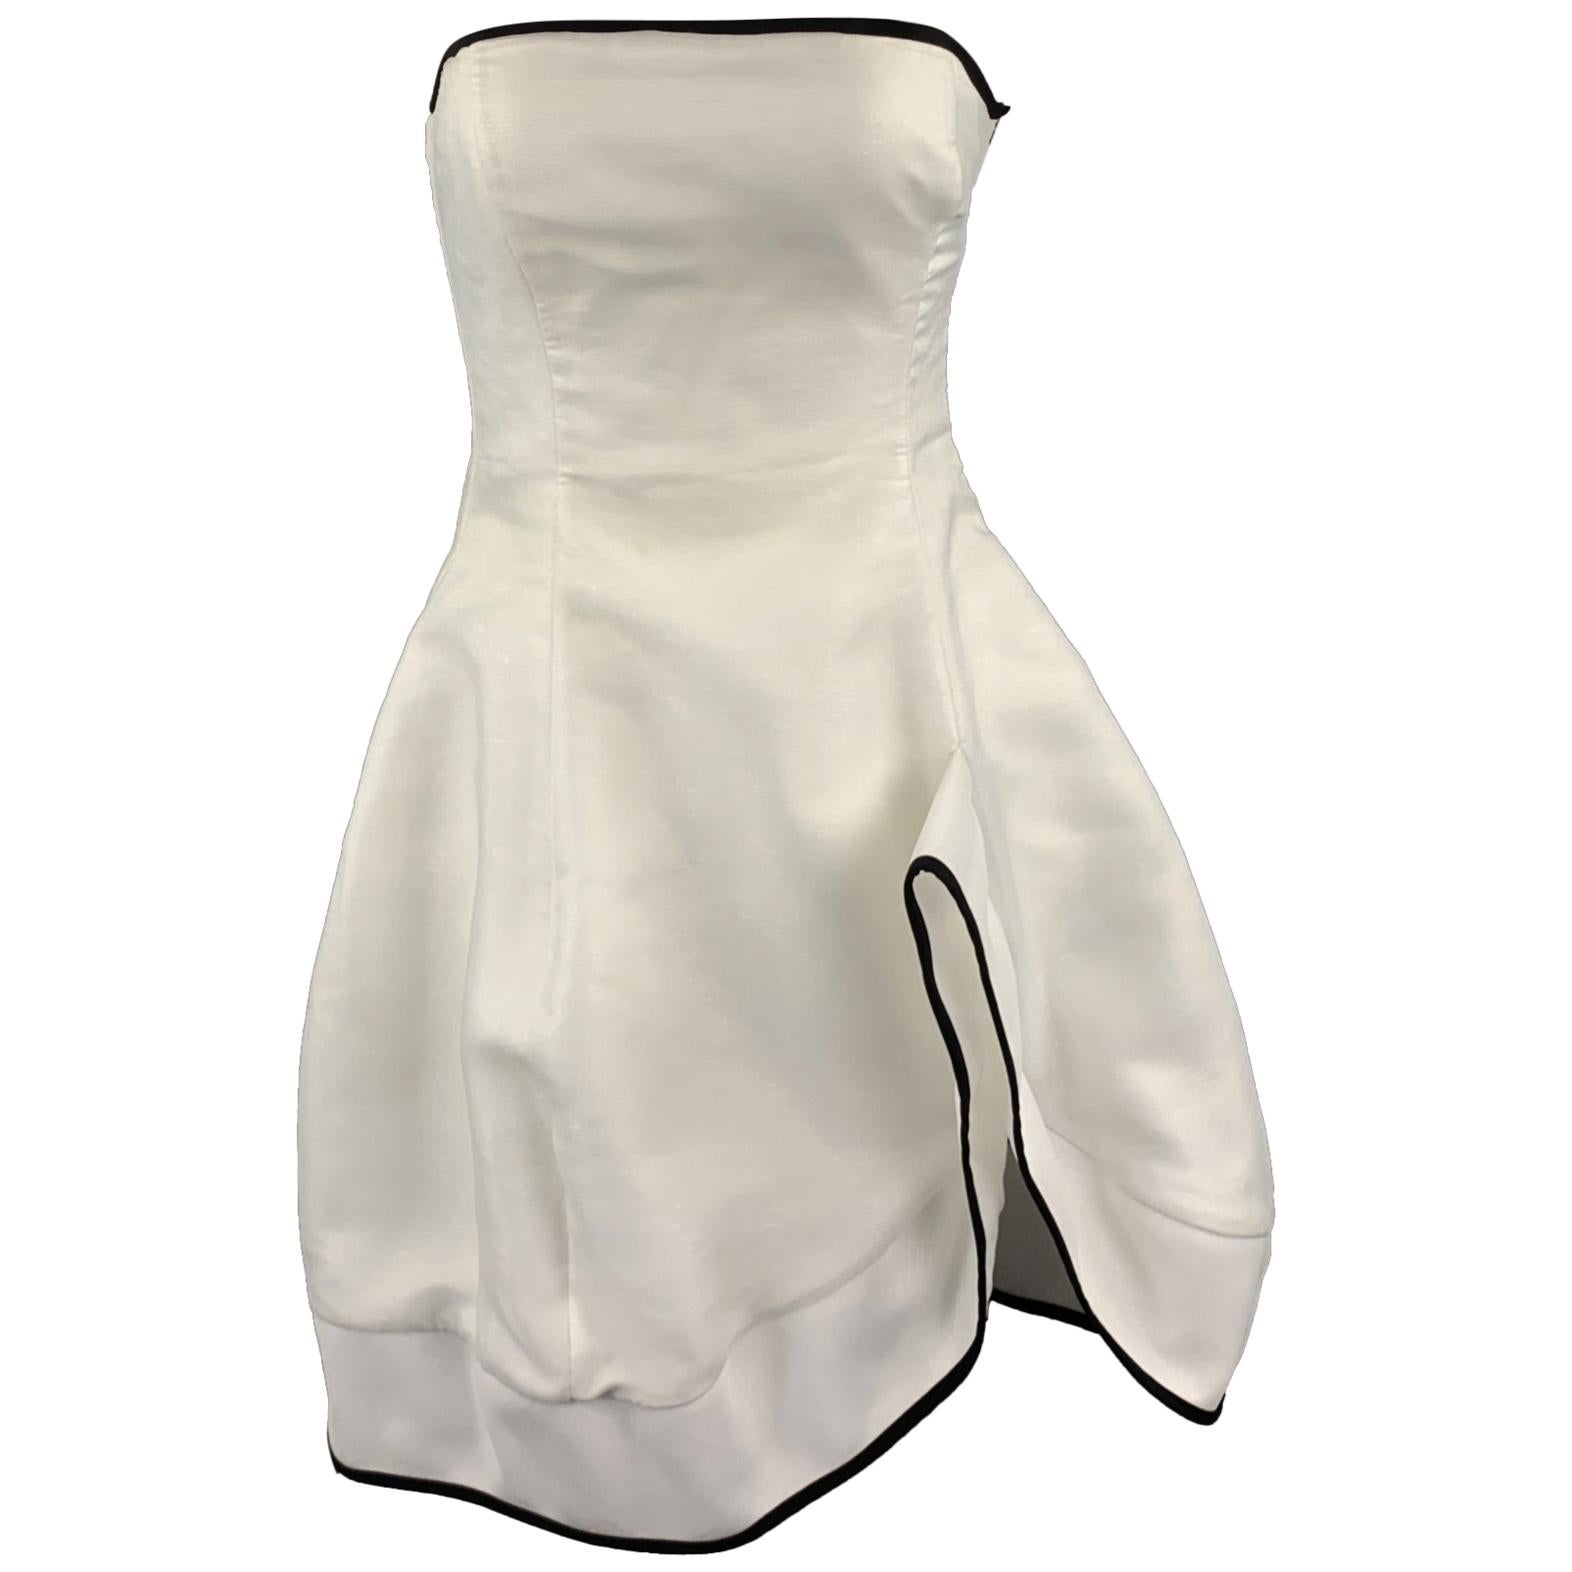 EMPORIO ARMANI Size 2 White Metallic Chiffon Strapless Cocktail Dress